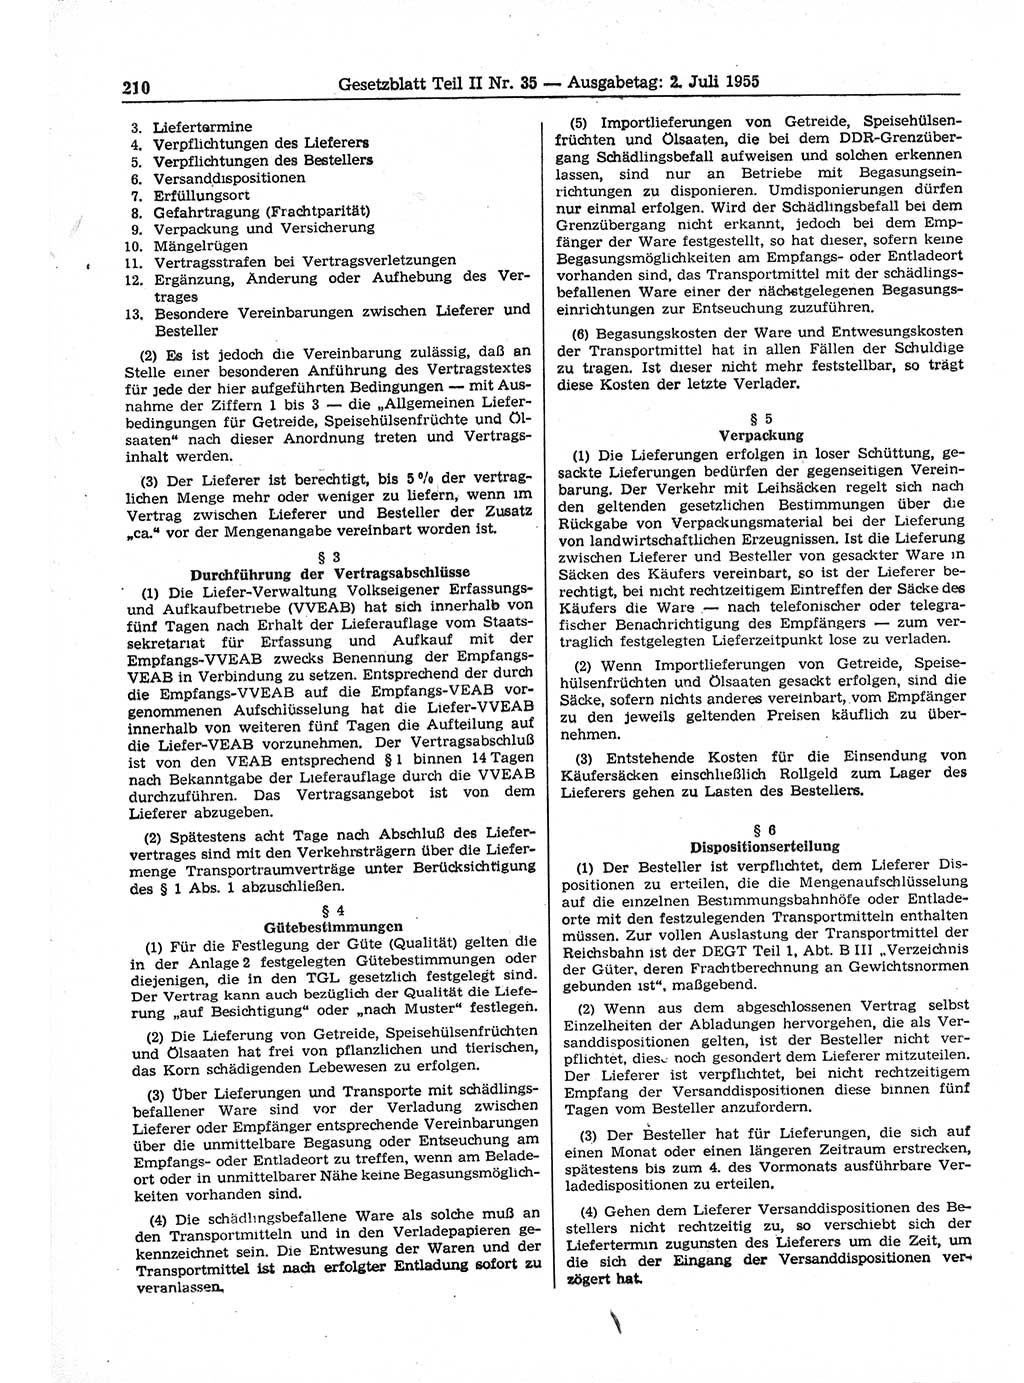 Gesetzblatt (GBl.) der Deutschen Demokratischen Republik (DDR) Teil ⅠⅠ 1955, Seite 210 (GBl. DDR ⅠⅠ 1955, S. 210)